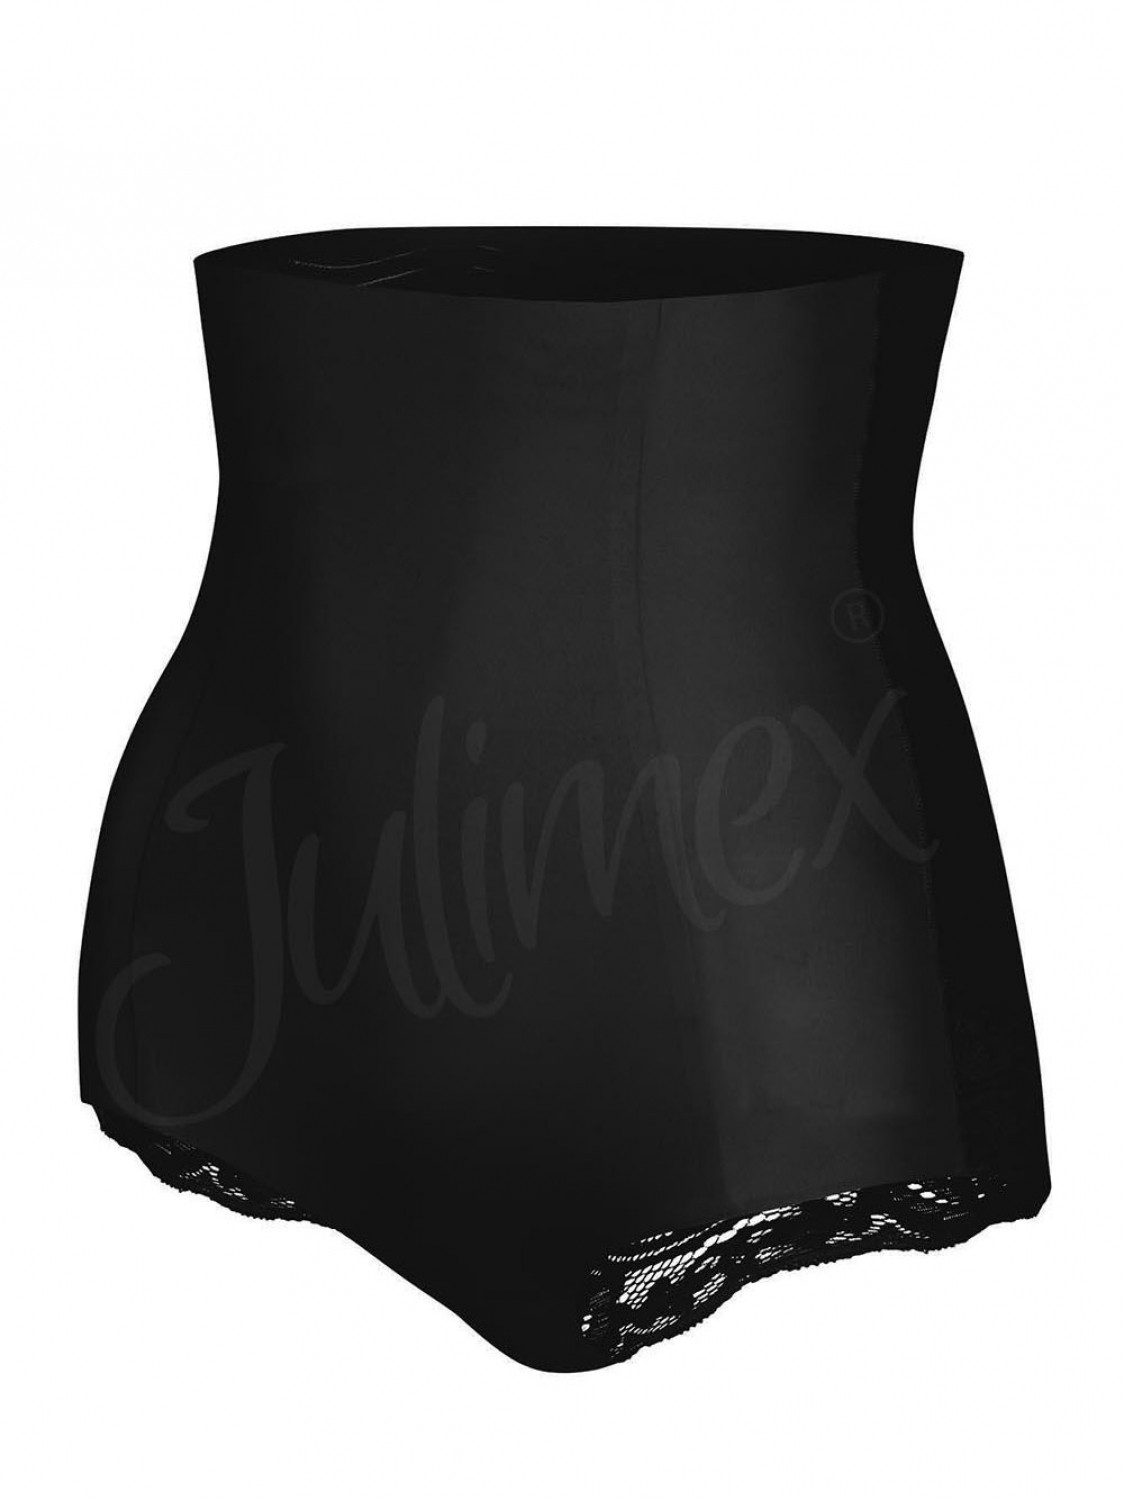 Dámské stahovací kalhotky 341 black - JULIMEX černá XL